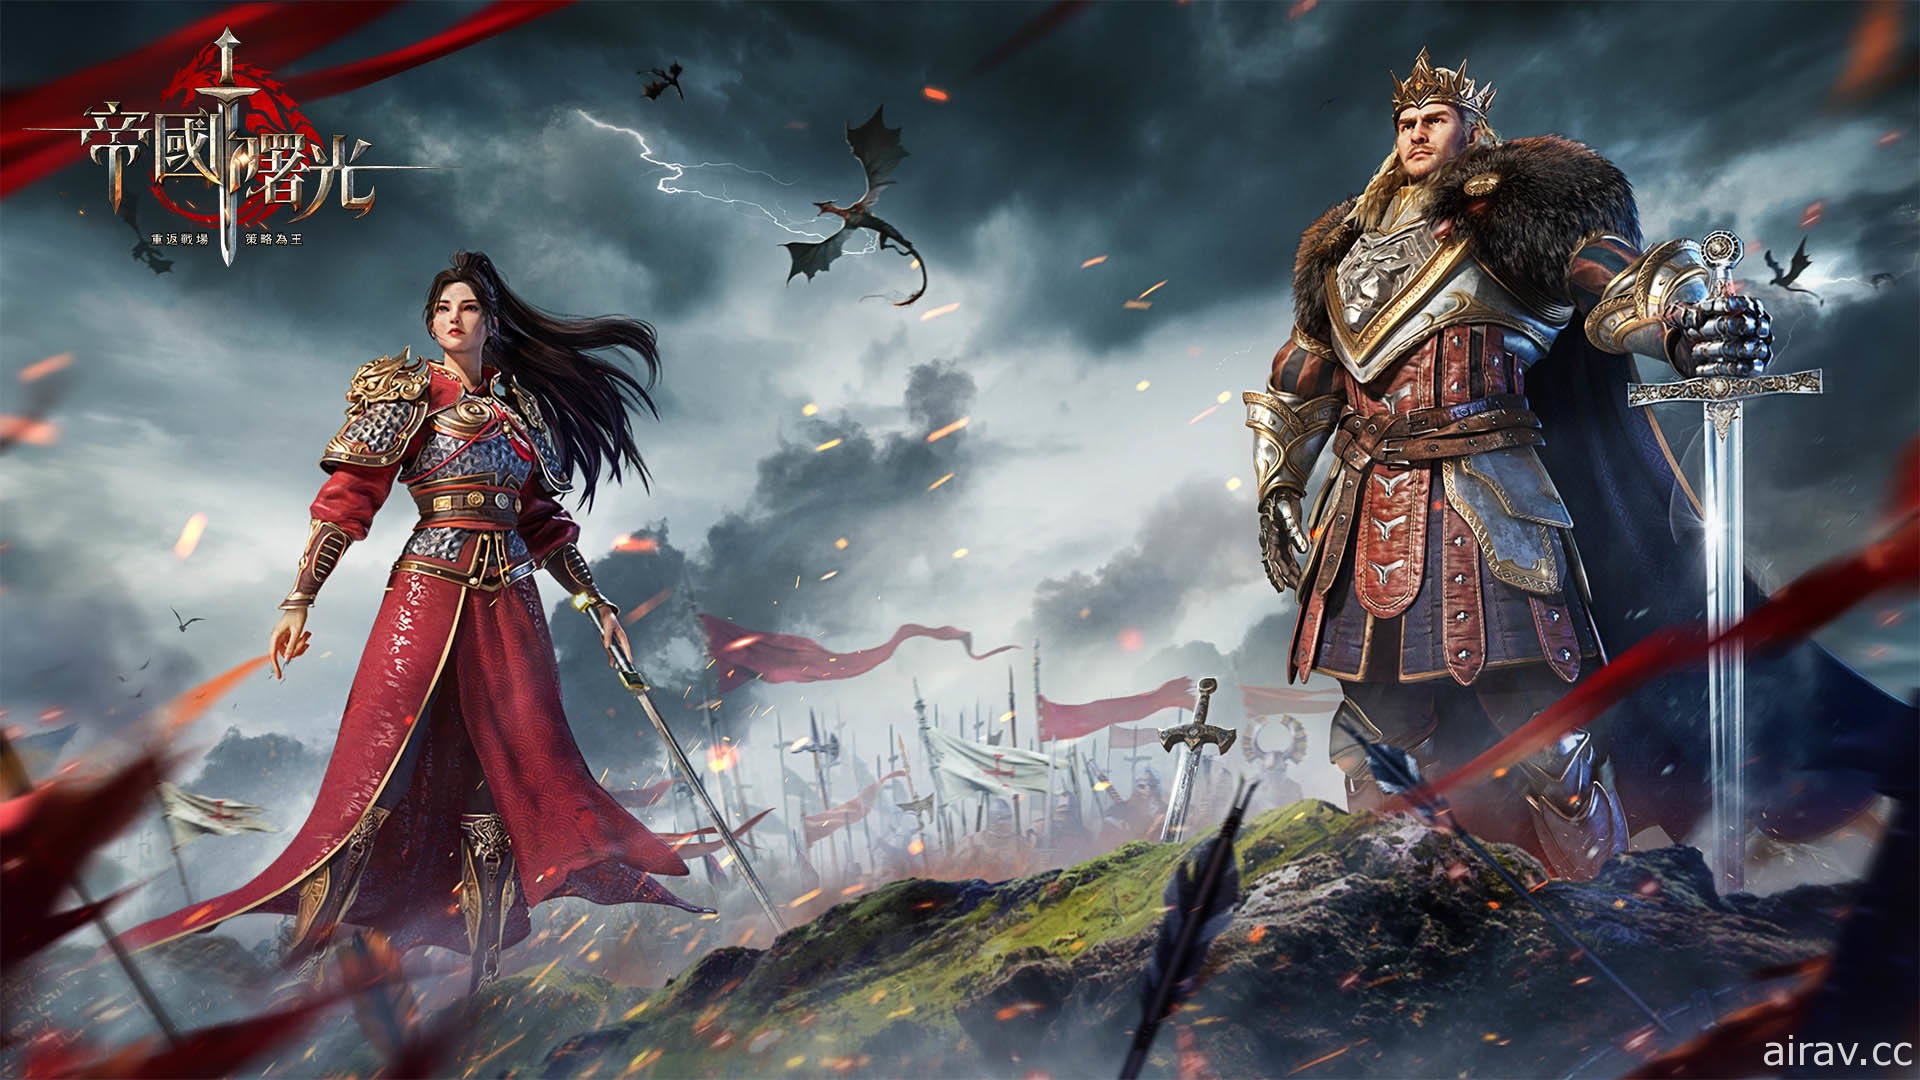 帝国即时战略游戏《帝国曙光》开启公测 推出中华文明专属英雄“花木兰”